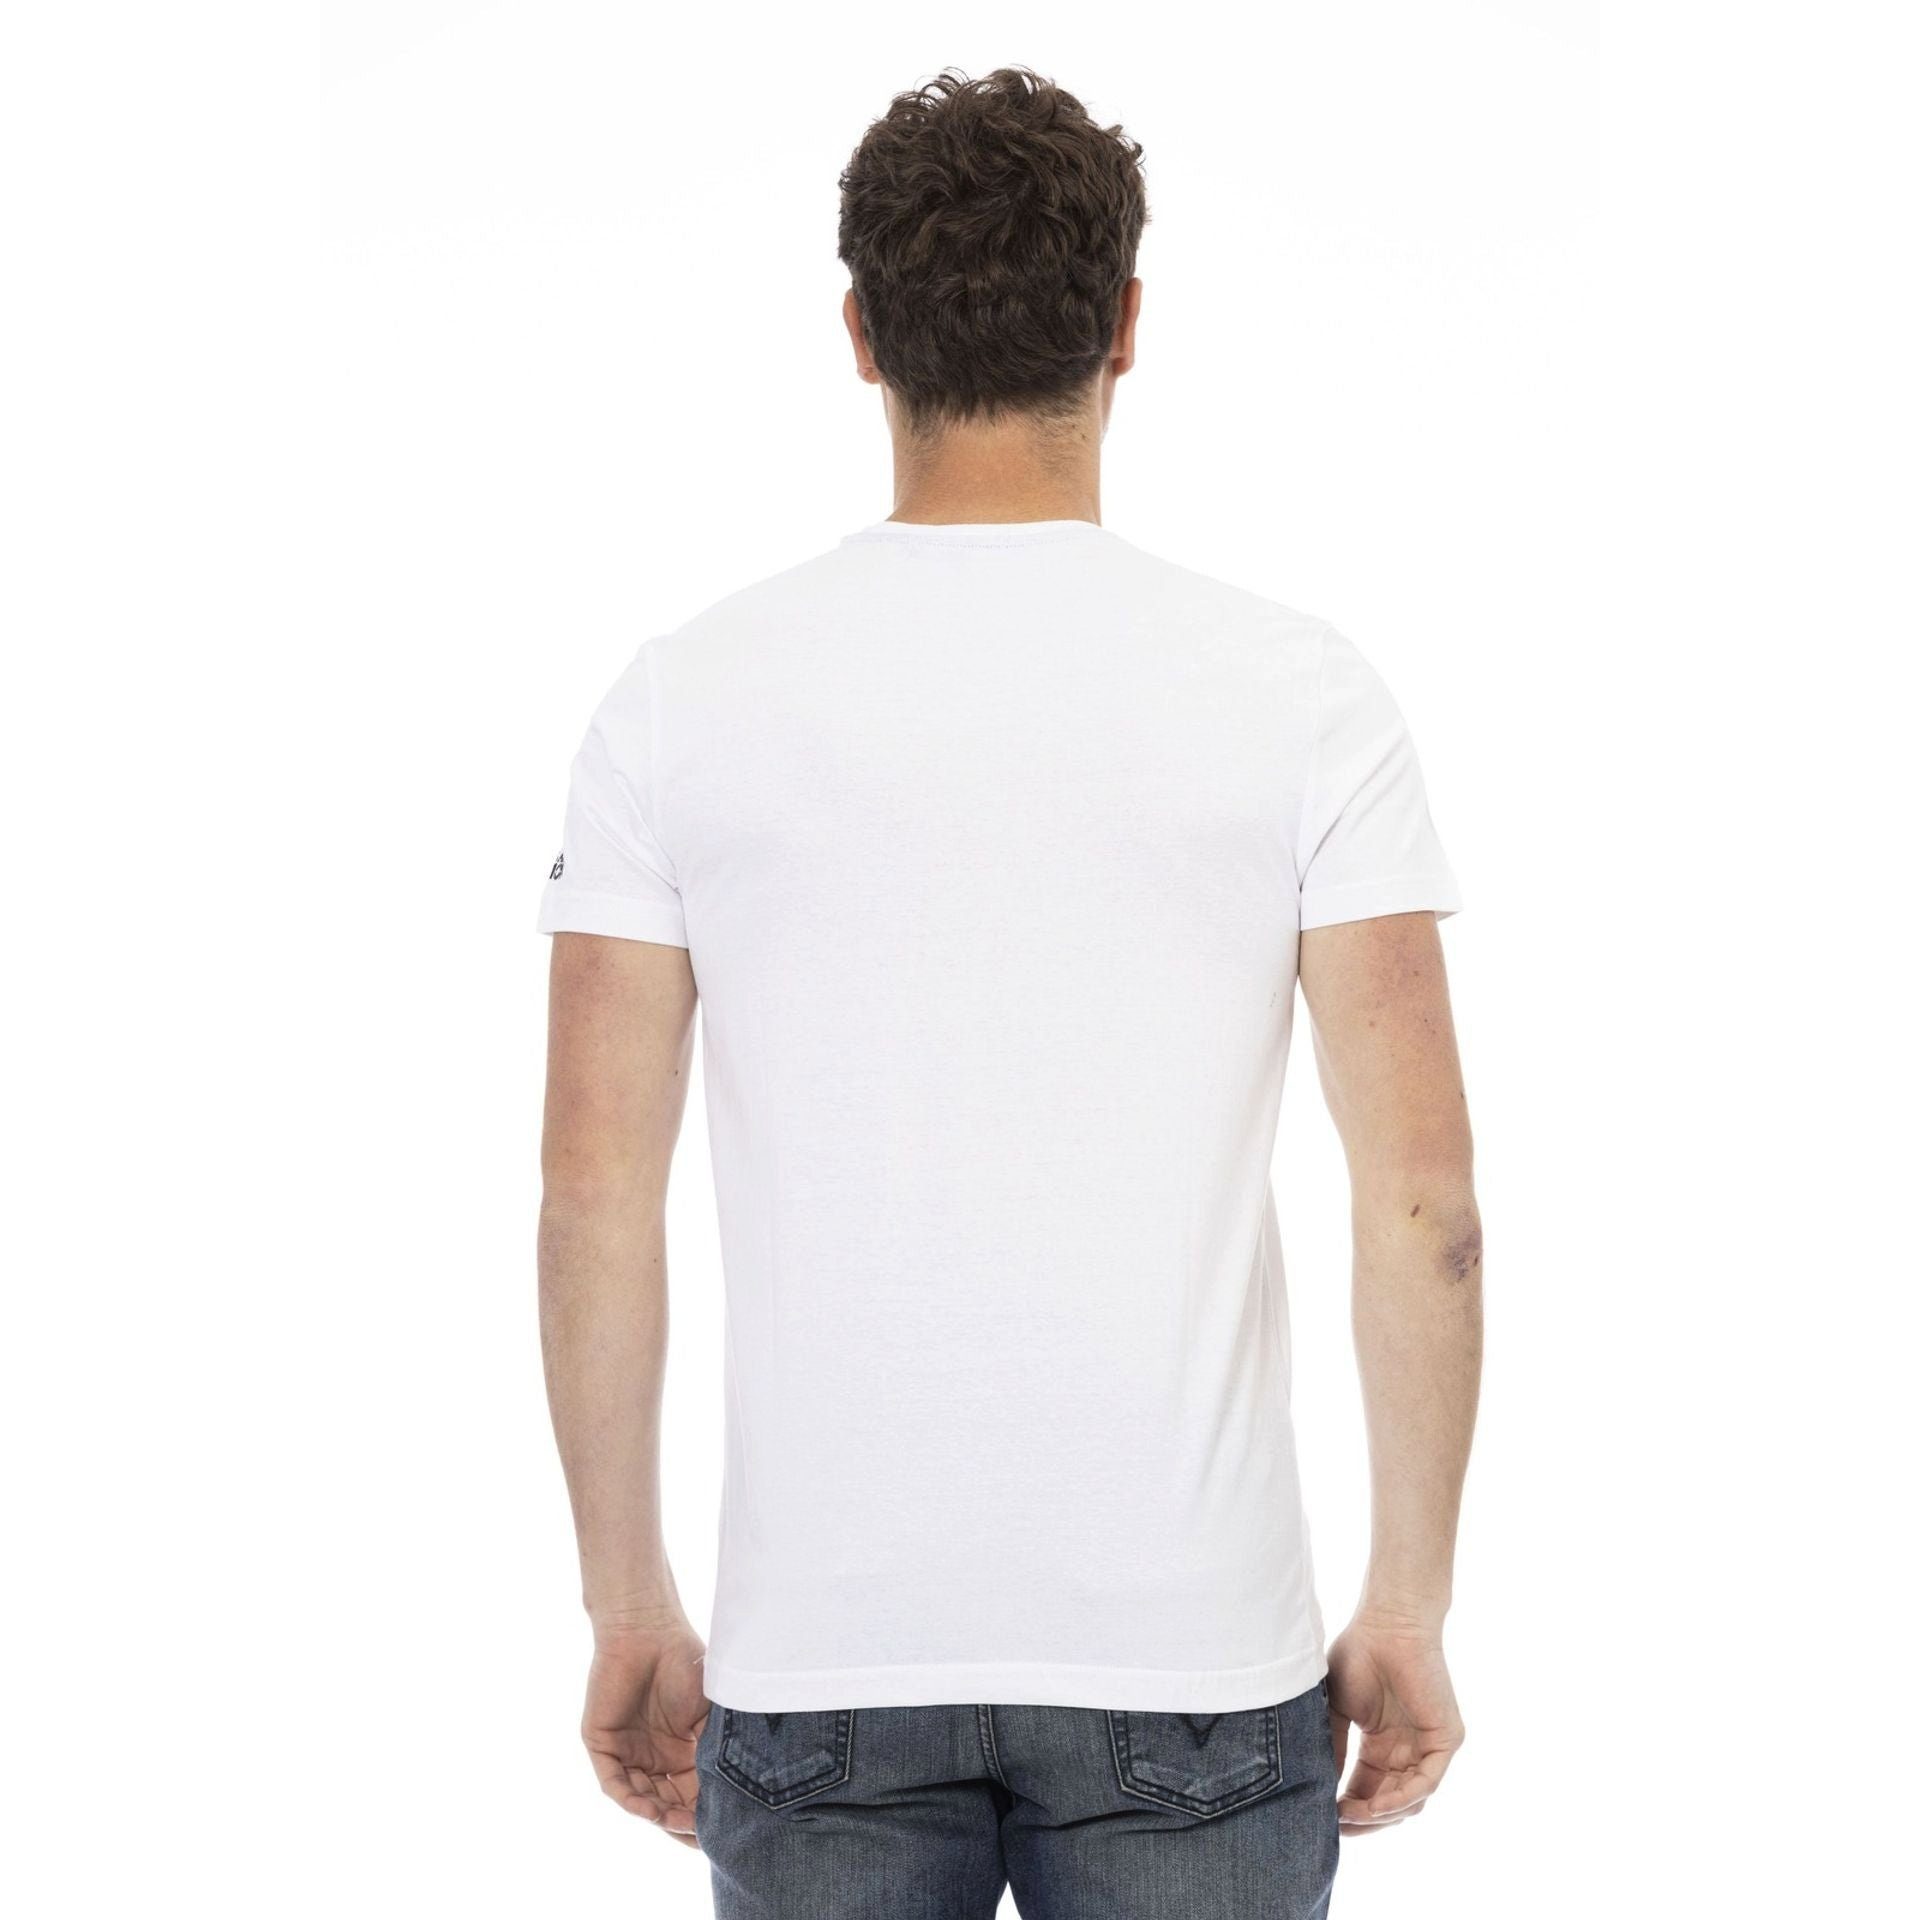 Trussardi T-Shirt Trussardi Action subtile, Es das Note Logo-Muster zeichnet stilvolle durch das sich eine aber T-Shirts, verleiht Weiß aus